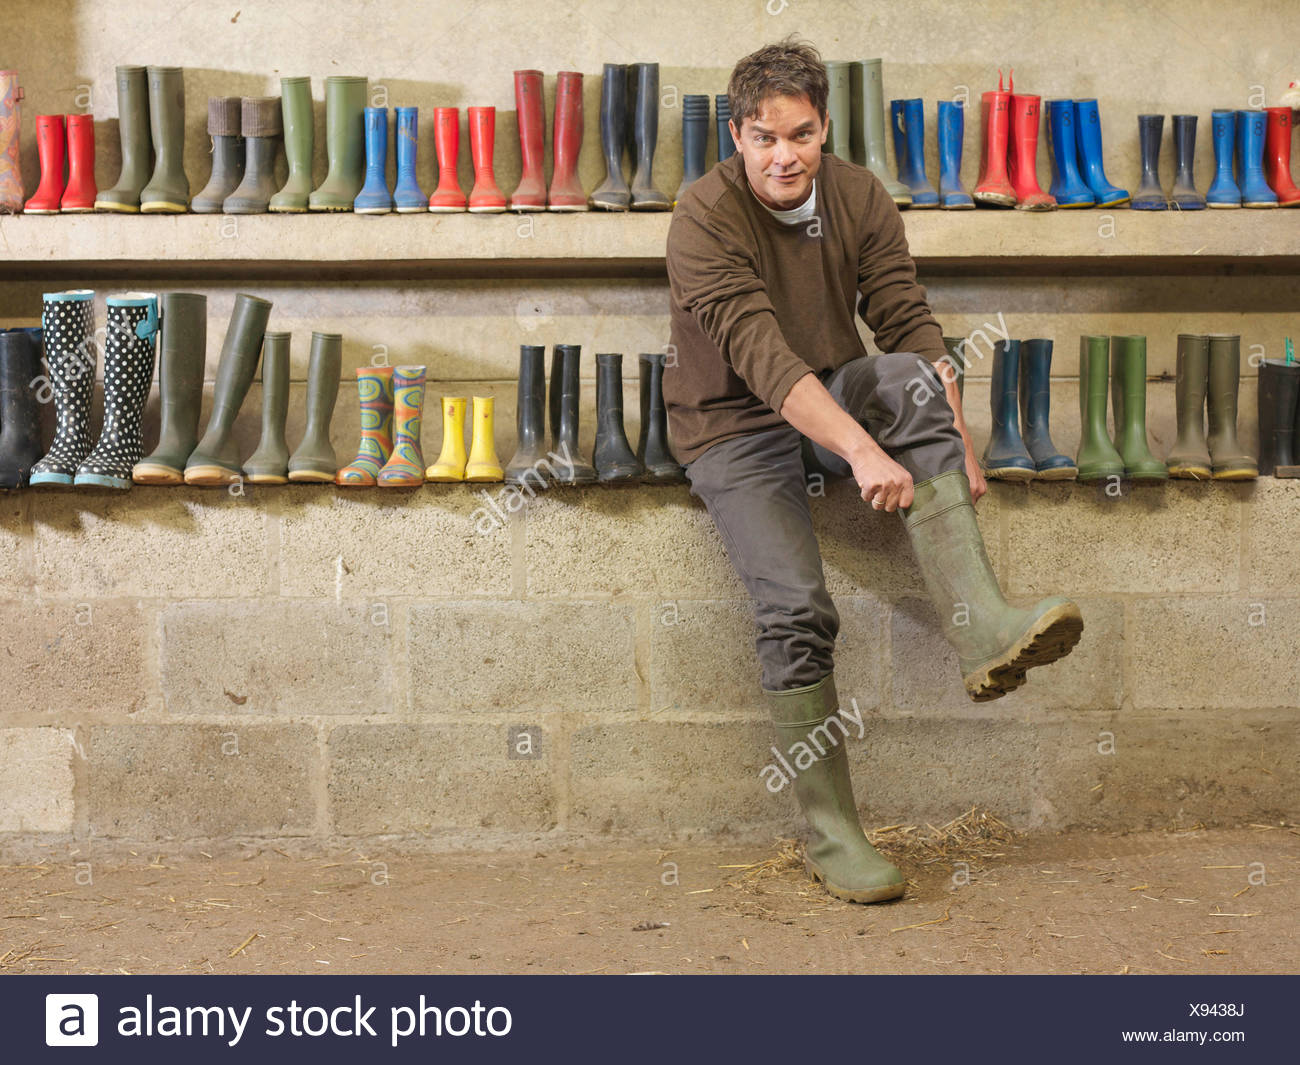 Buy > farmer wellington boots > in stock